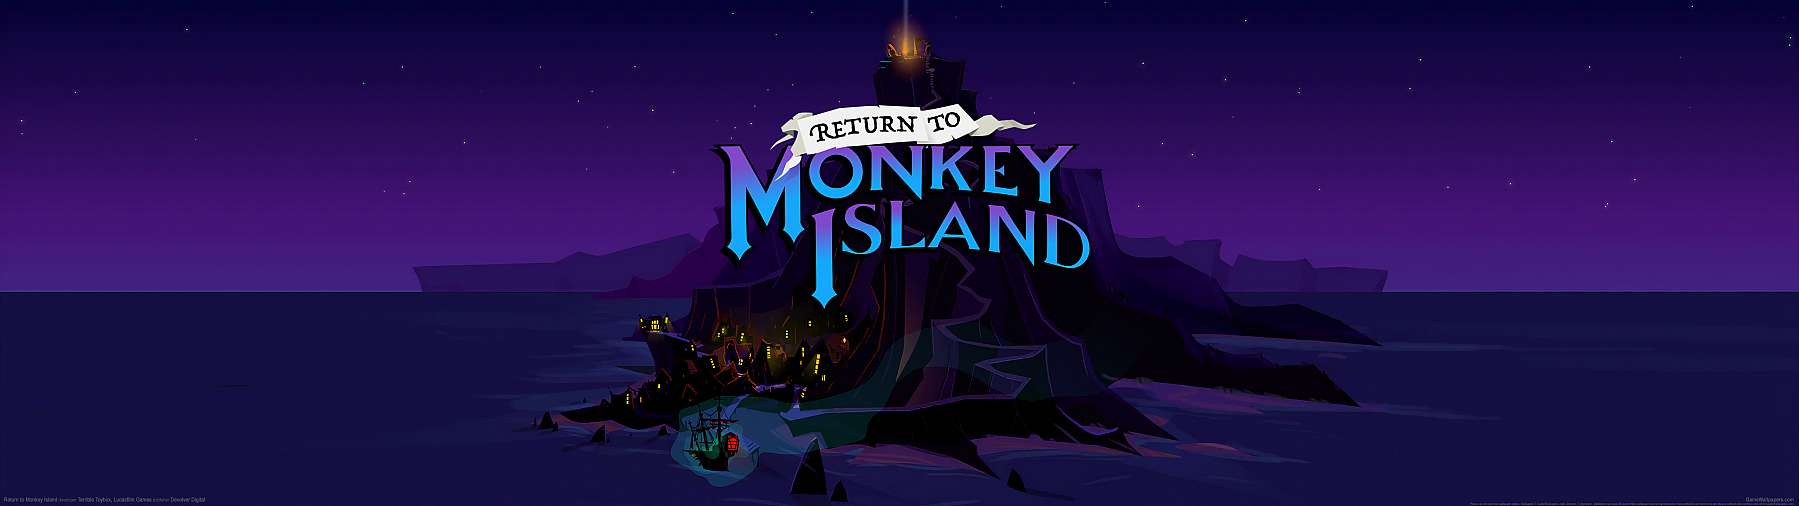 Return to Monkey Island fond d'écran